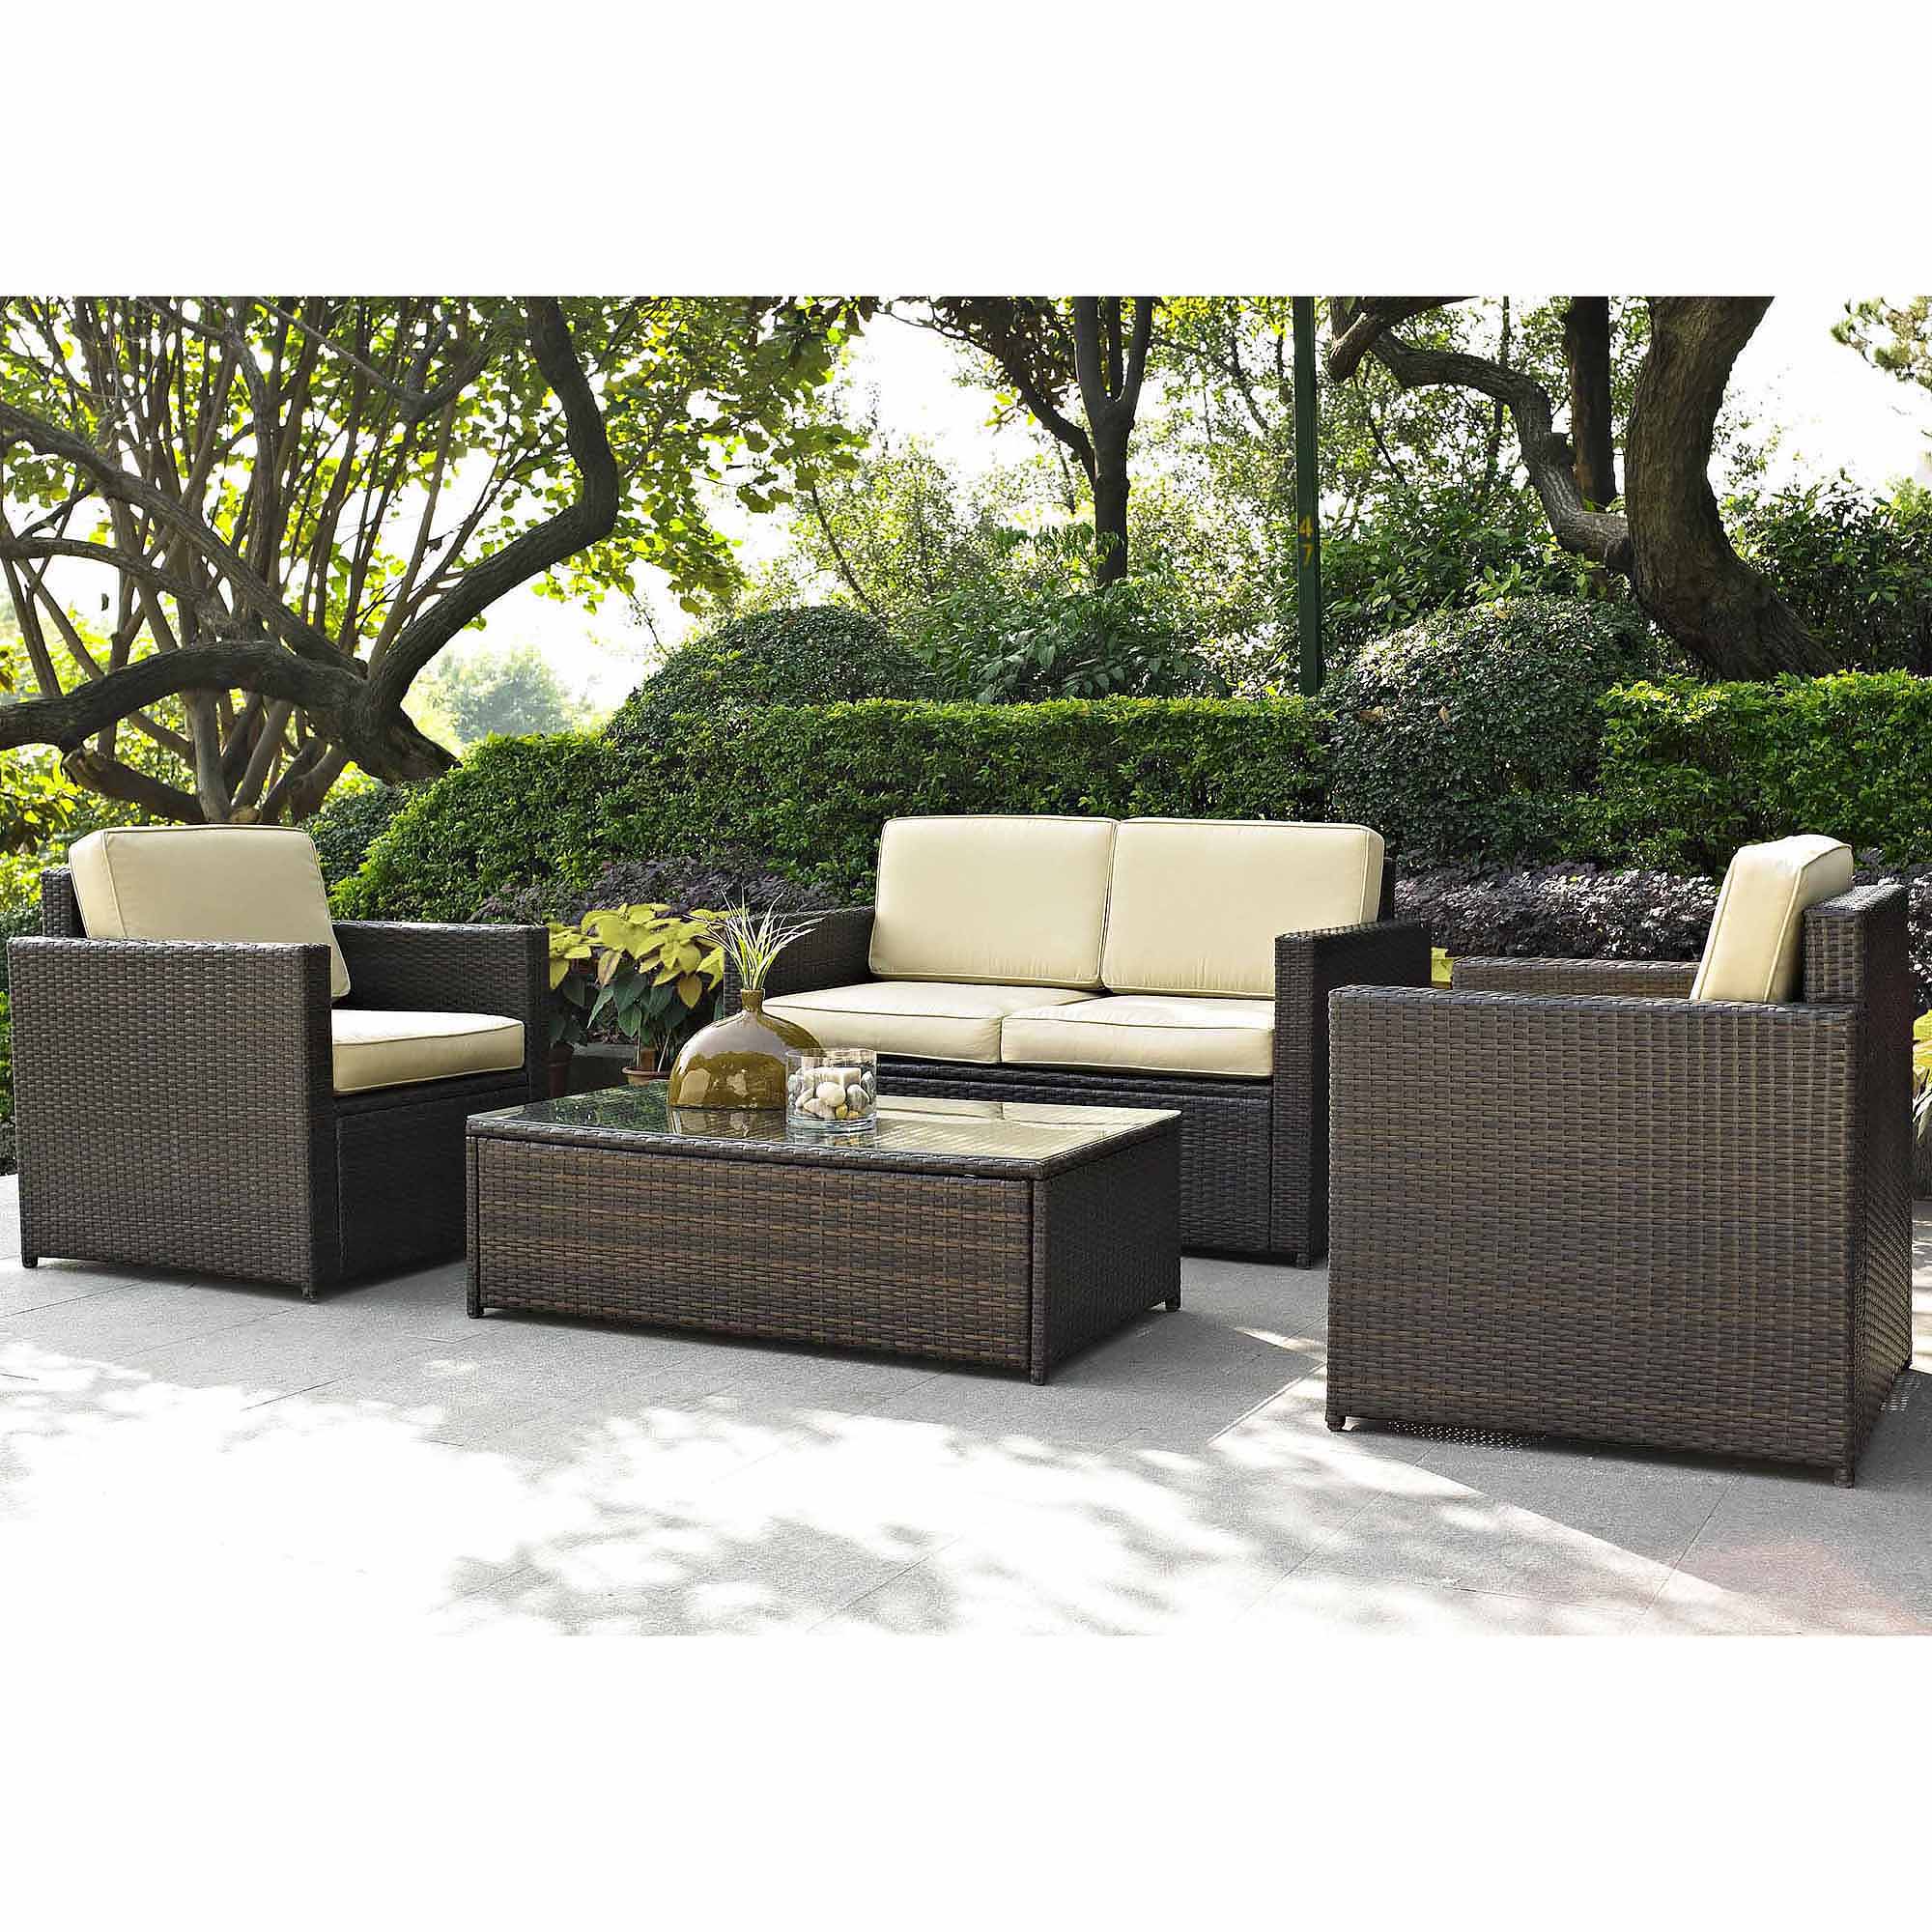 rattan outdoor furniture 5d6f1178c3c8 1 exterior patio furniturec2a0 furniture commercial cushions BDOMMKA